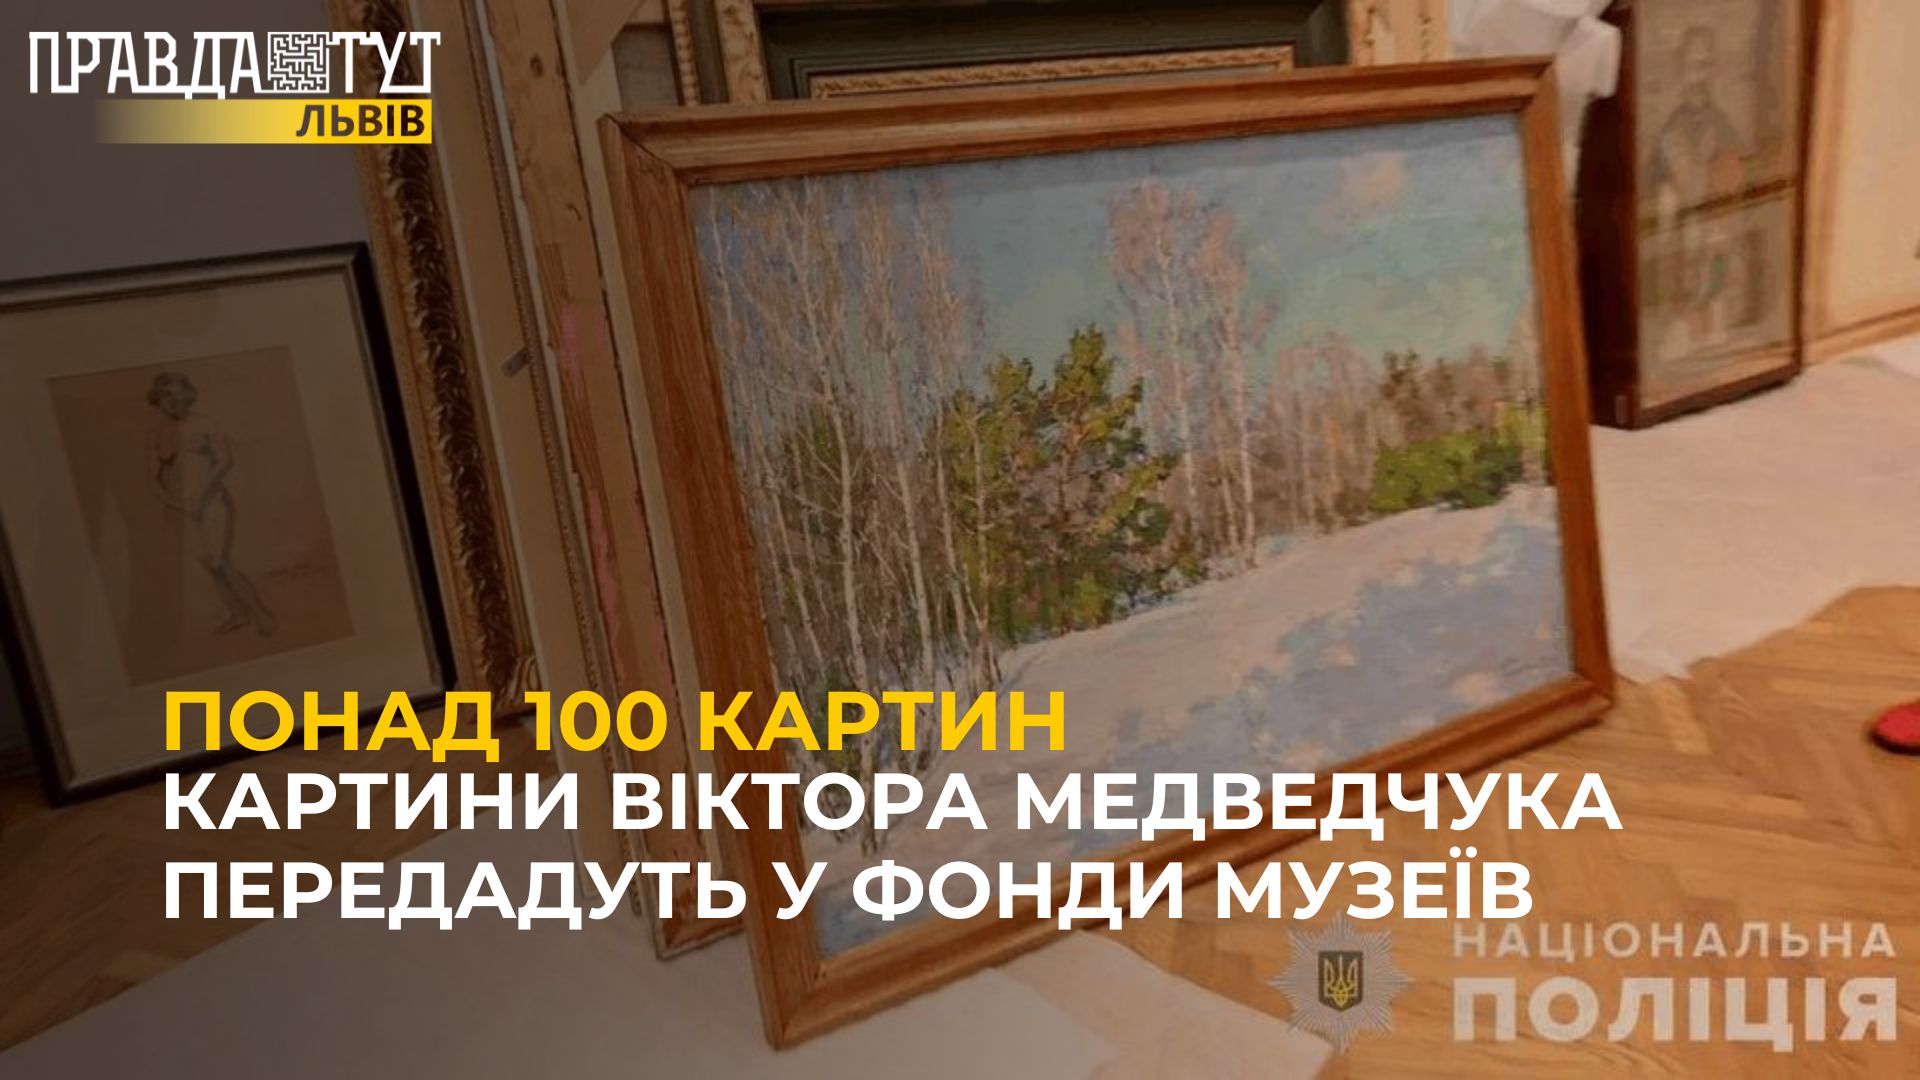 Понад 100 картин вилучених у Віктора Медведчука передадуть у фонди музеїв